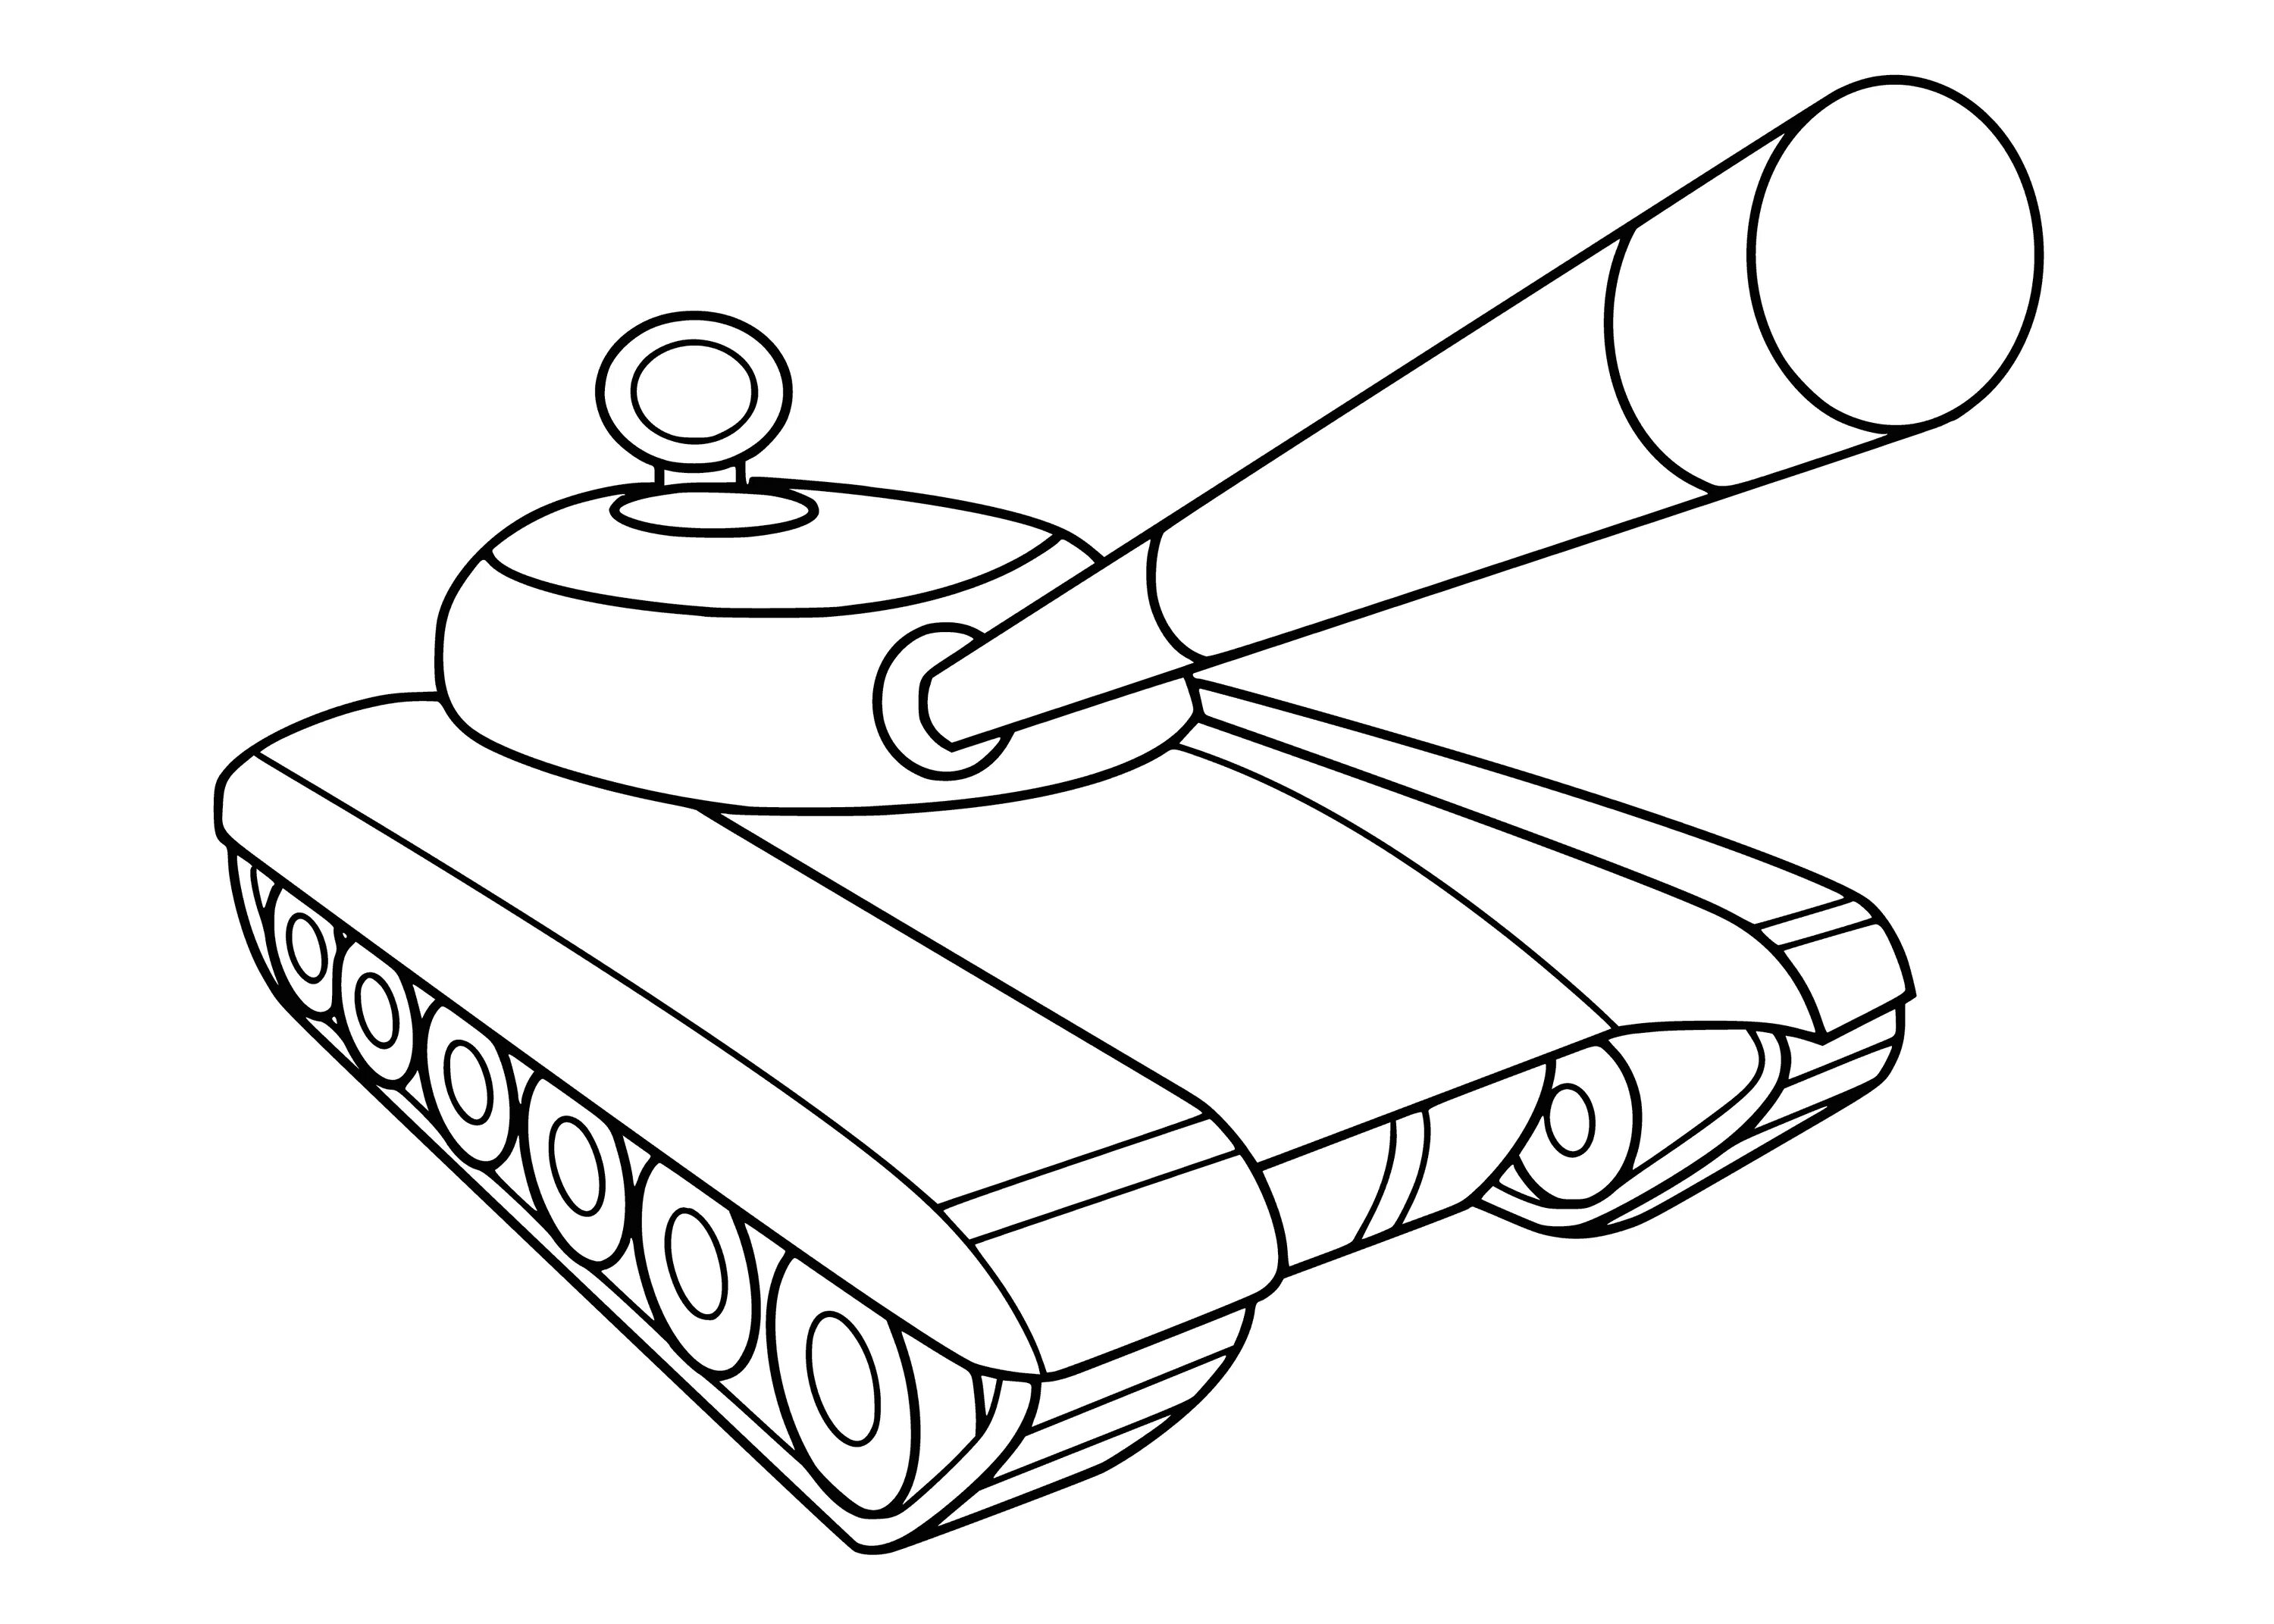 Скопировать танки. Раскраска танк. Раскраска панк. Раскраска танки для детей. Танк раскраска для малышей.